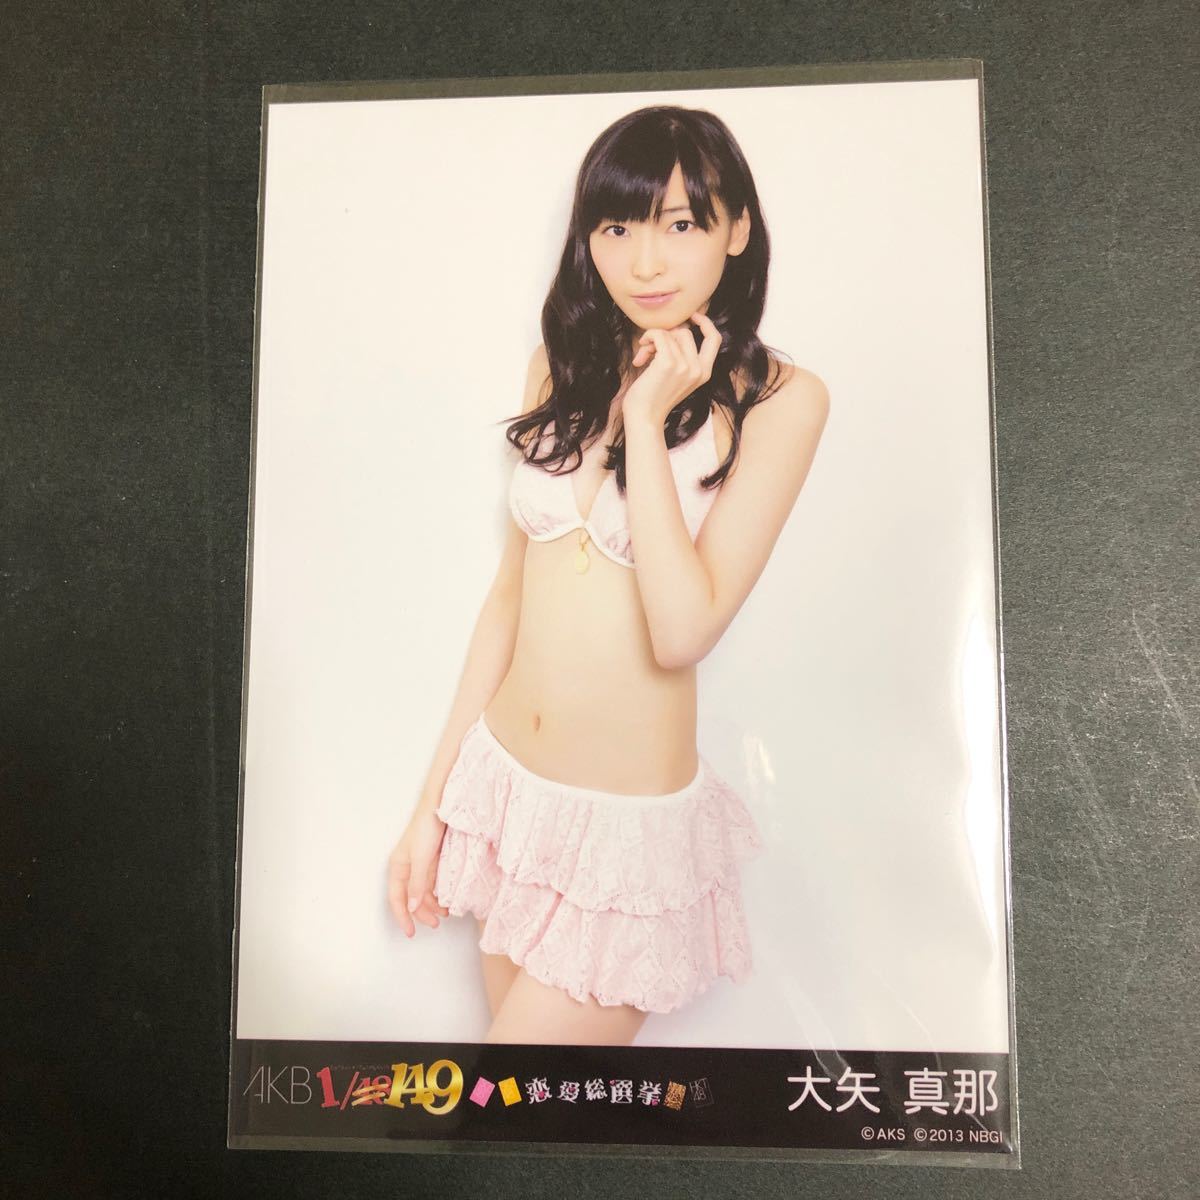 大矢真那 AKB48 1/149恋愛総選挙 PS3 特典 生写真 水着 SKE48_画像1